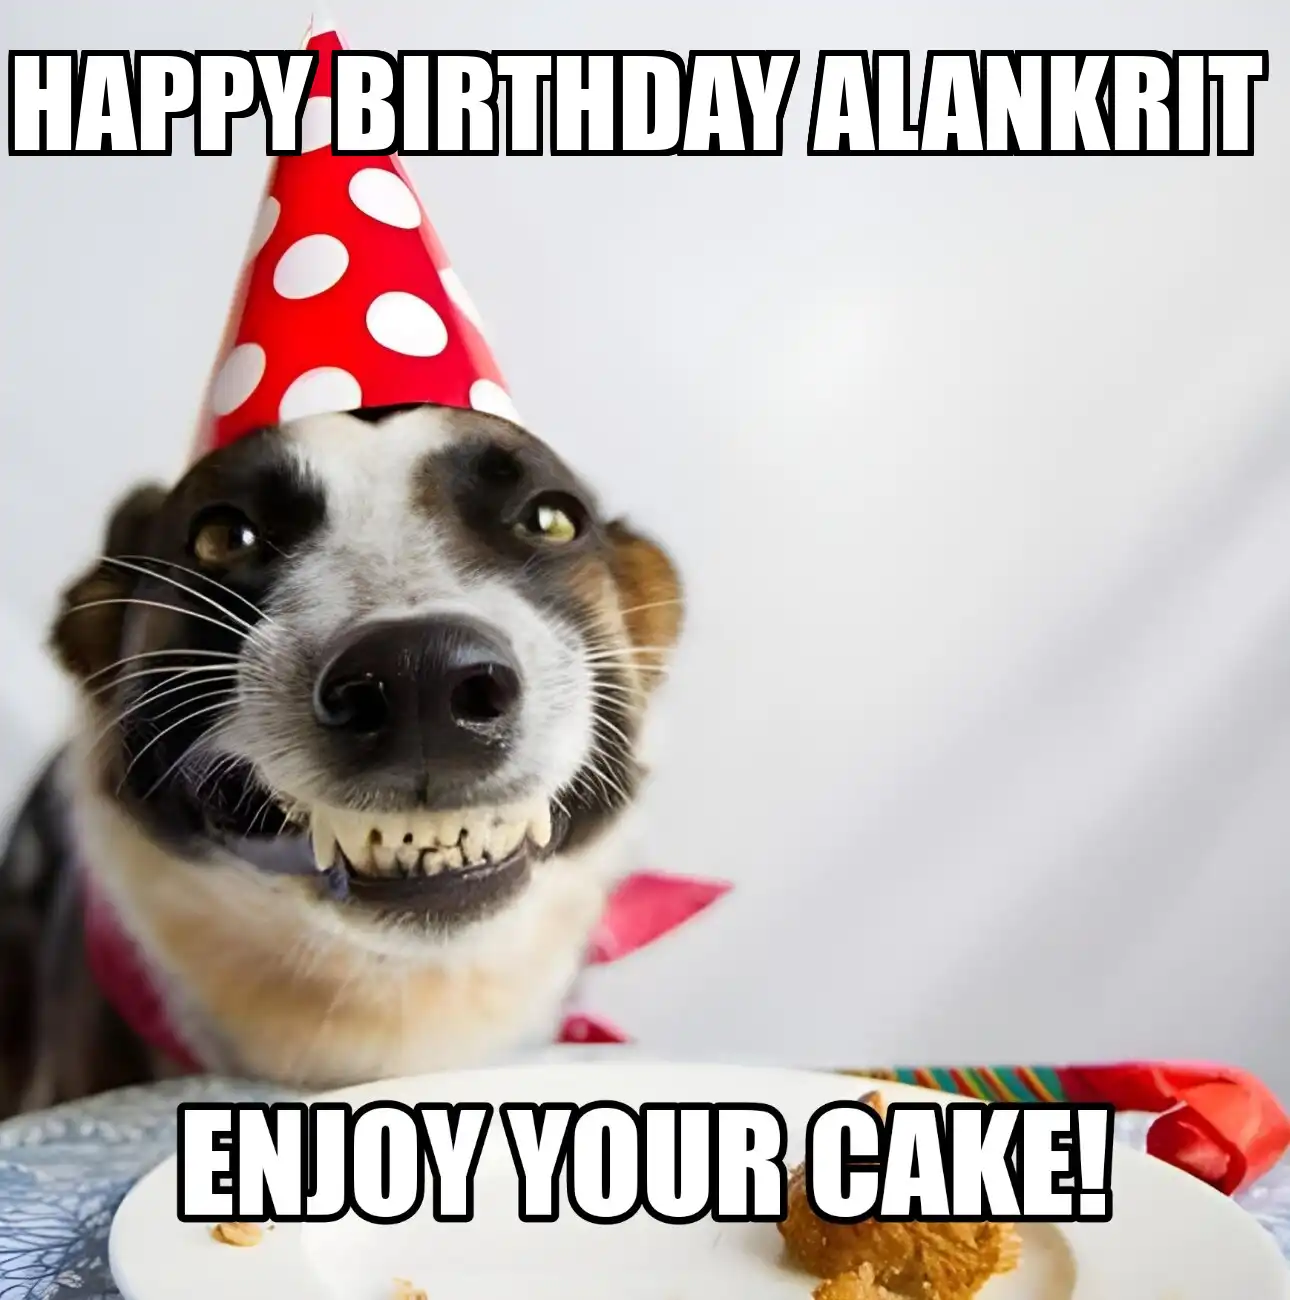 Happy Birthday Alankrit Enjoy Your Cake Dog Meme